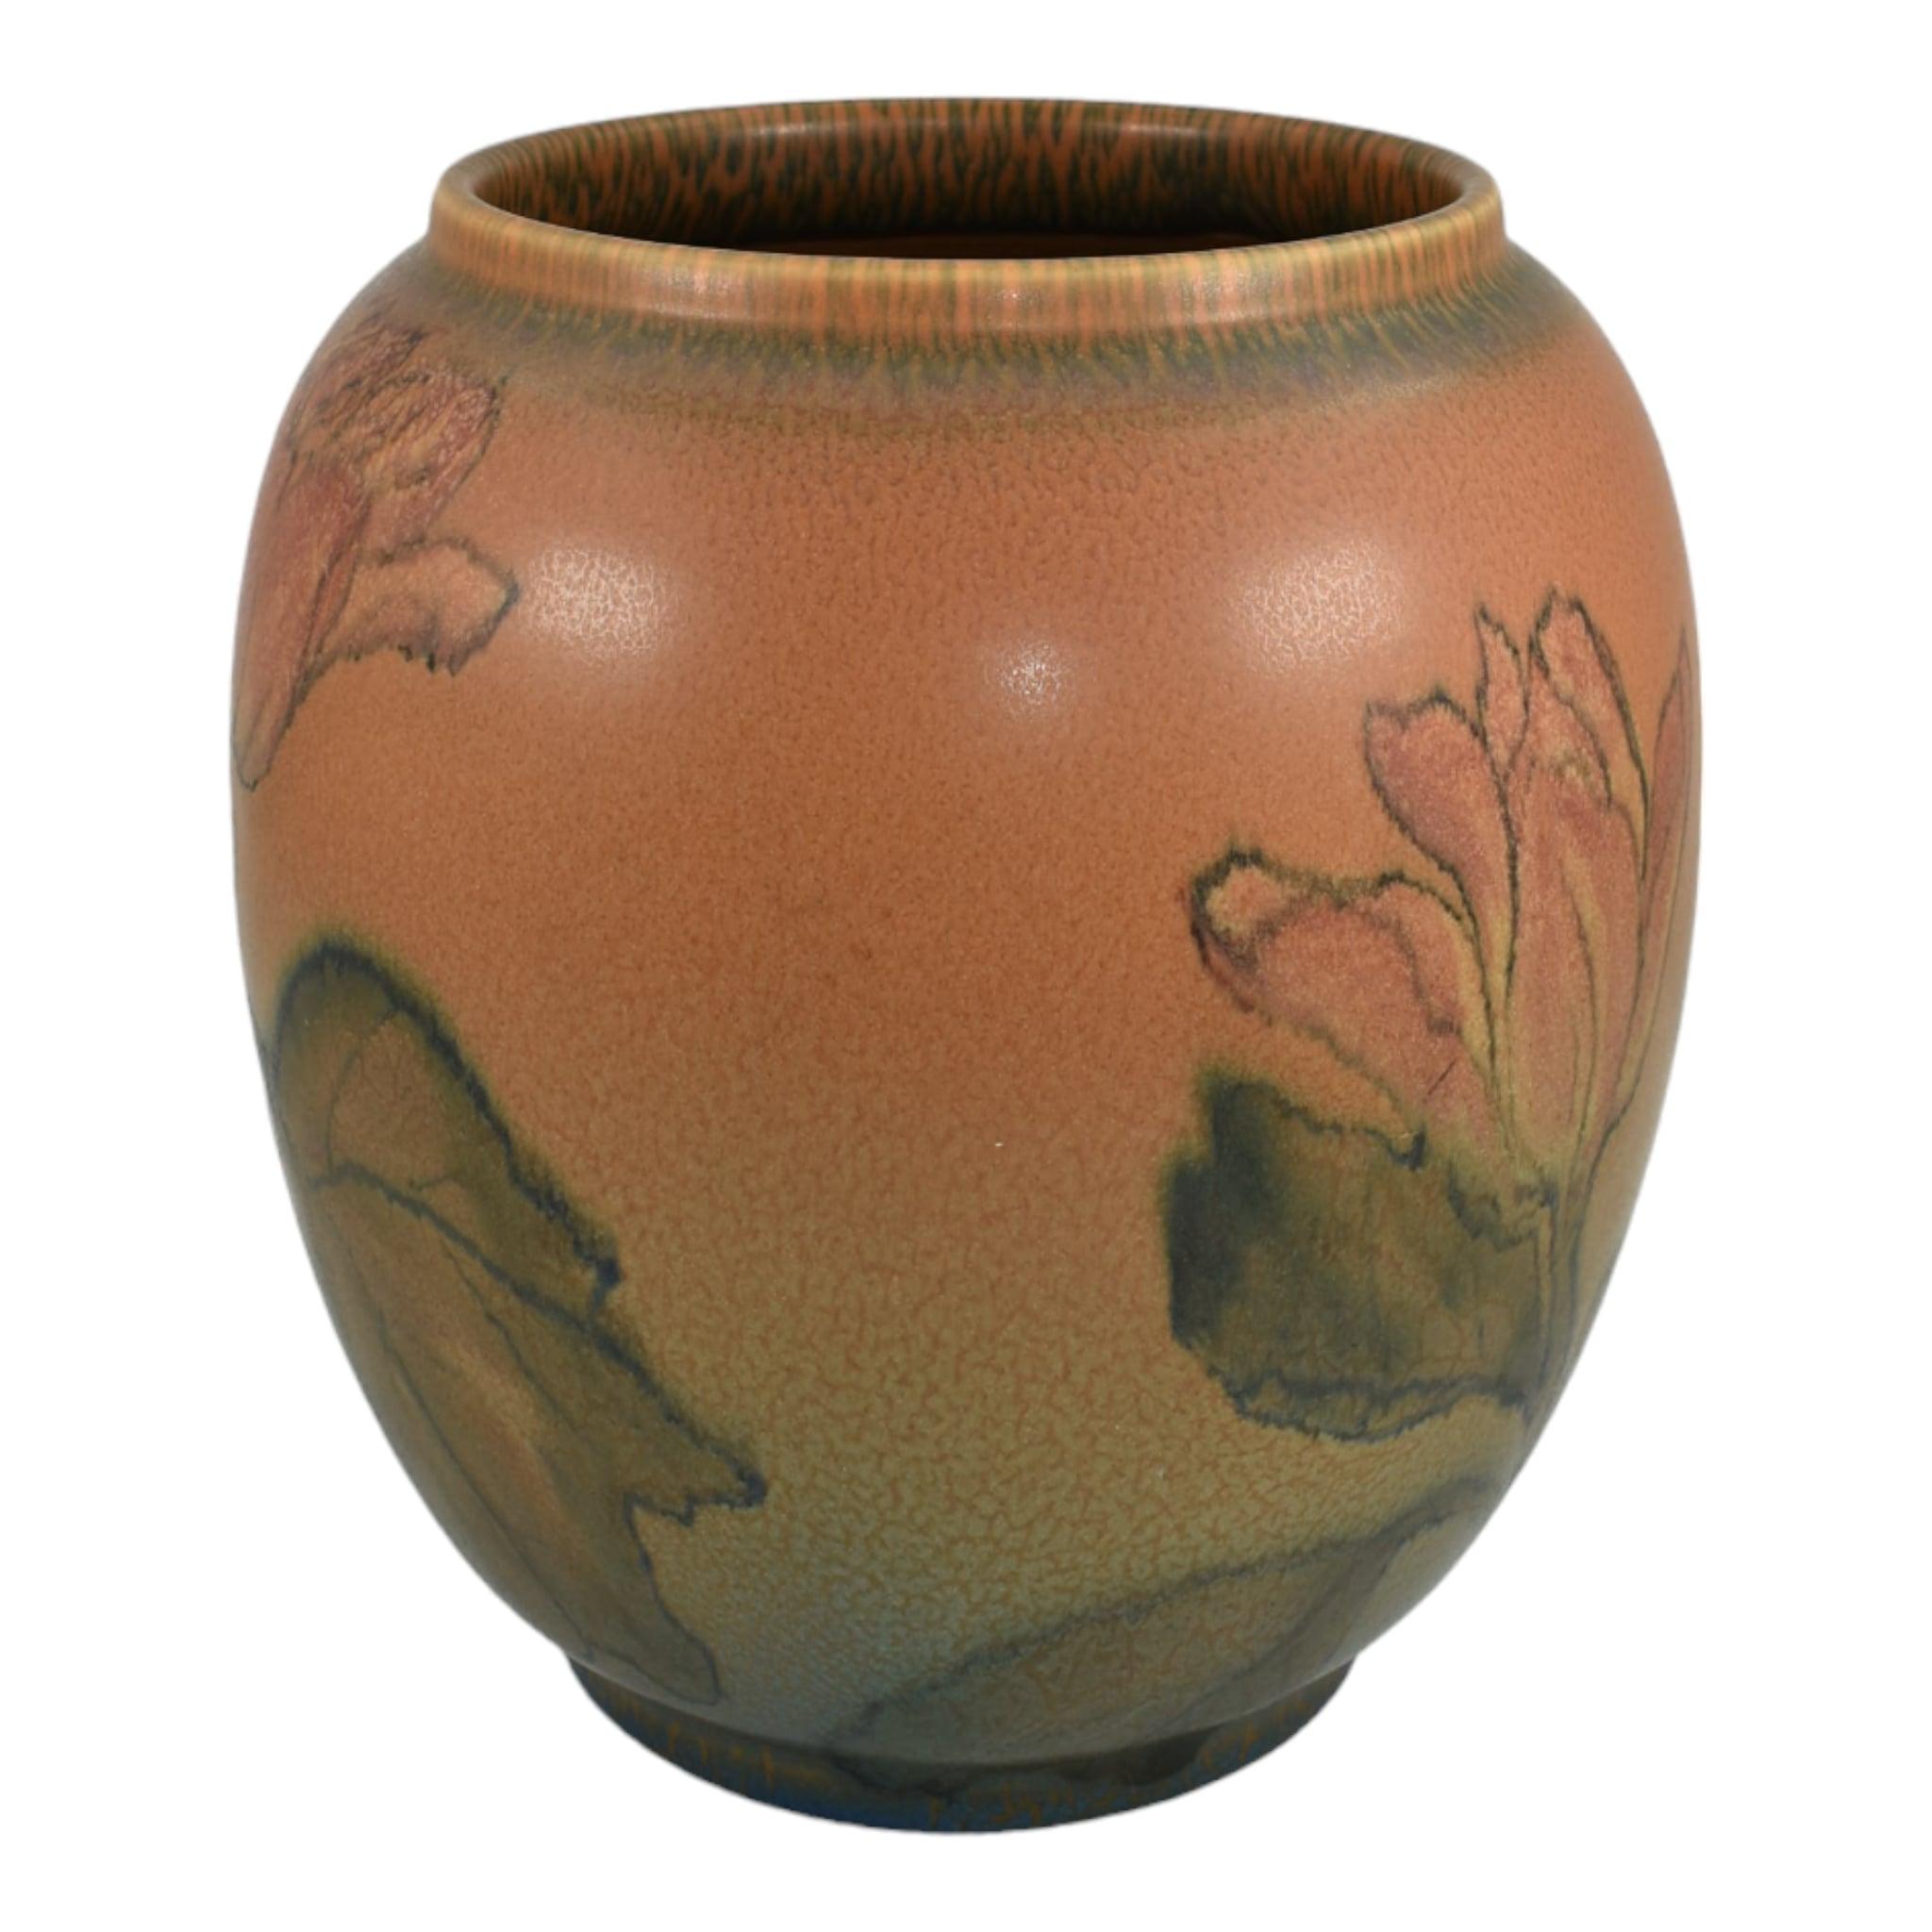 Rookwood 1924 Vintage Art Pottery Vase en céramique Orange Vellum 2245 (Lincoln)
Grand et superbe vase bulbeux avec un exceptionnel motif floral peint à la main par Elizabeth Lincoln en 1924.
Excellent état d'origine. Pas d'ébréchures, de fissures,